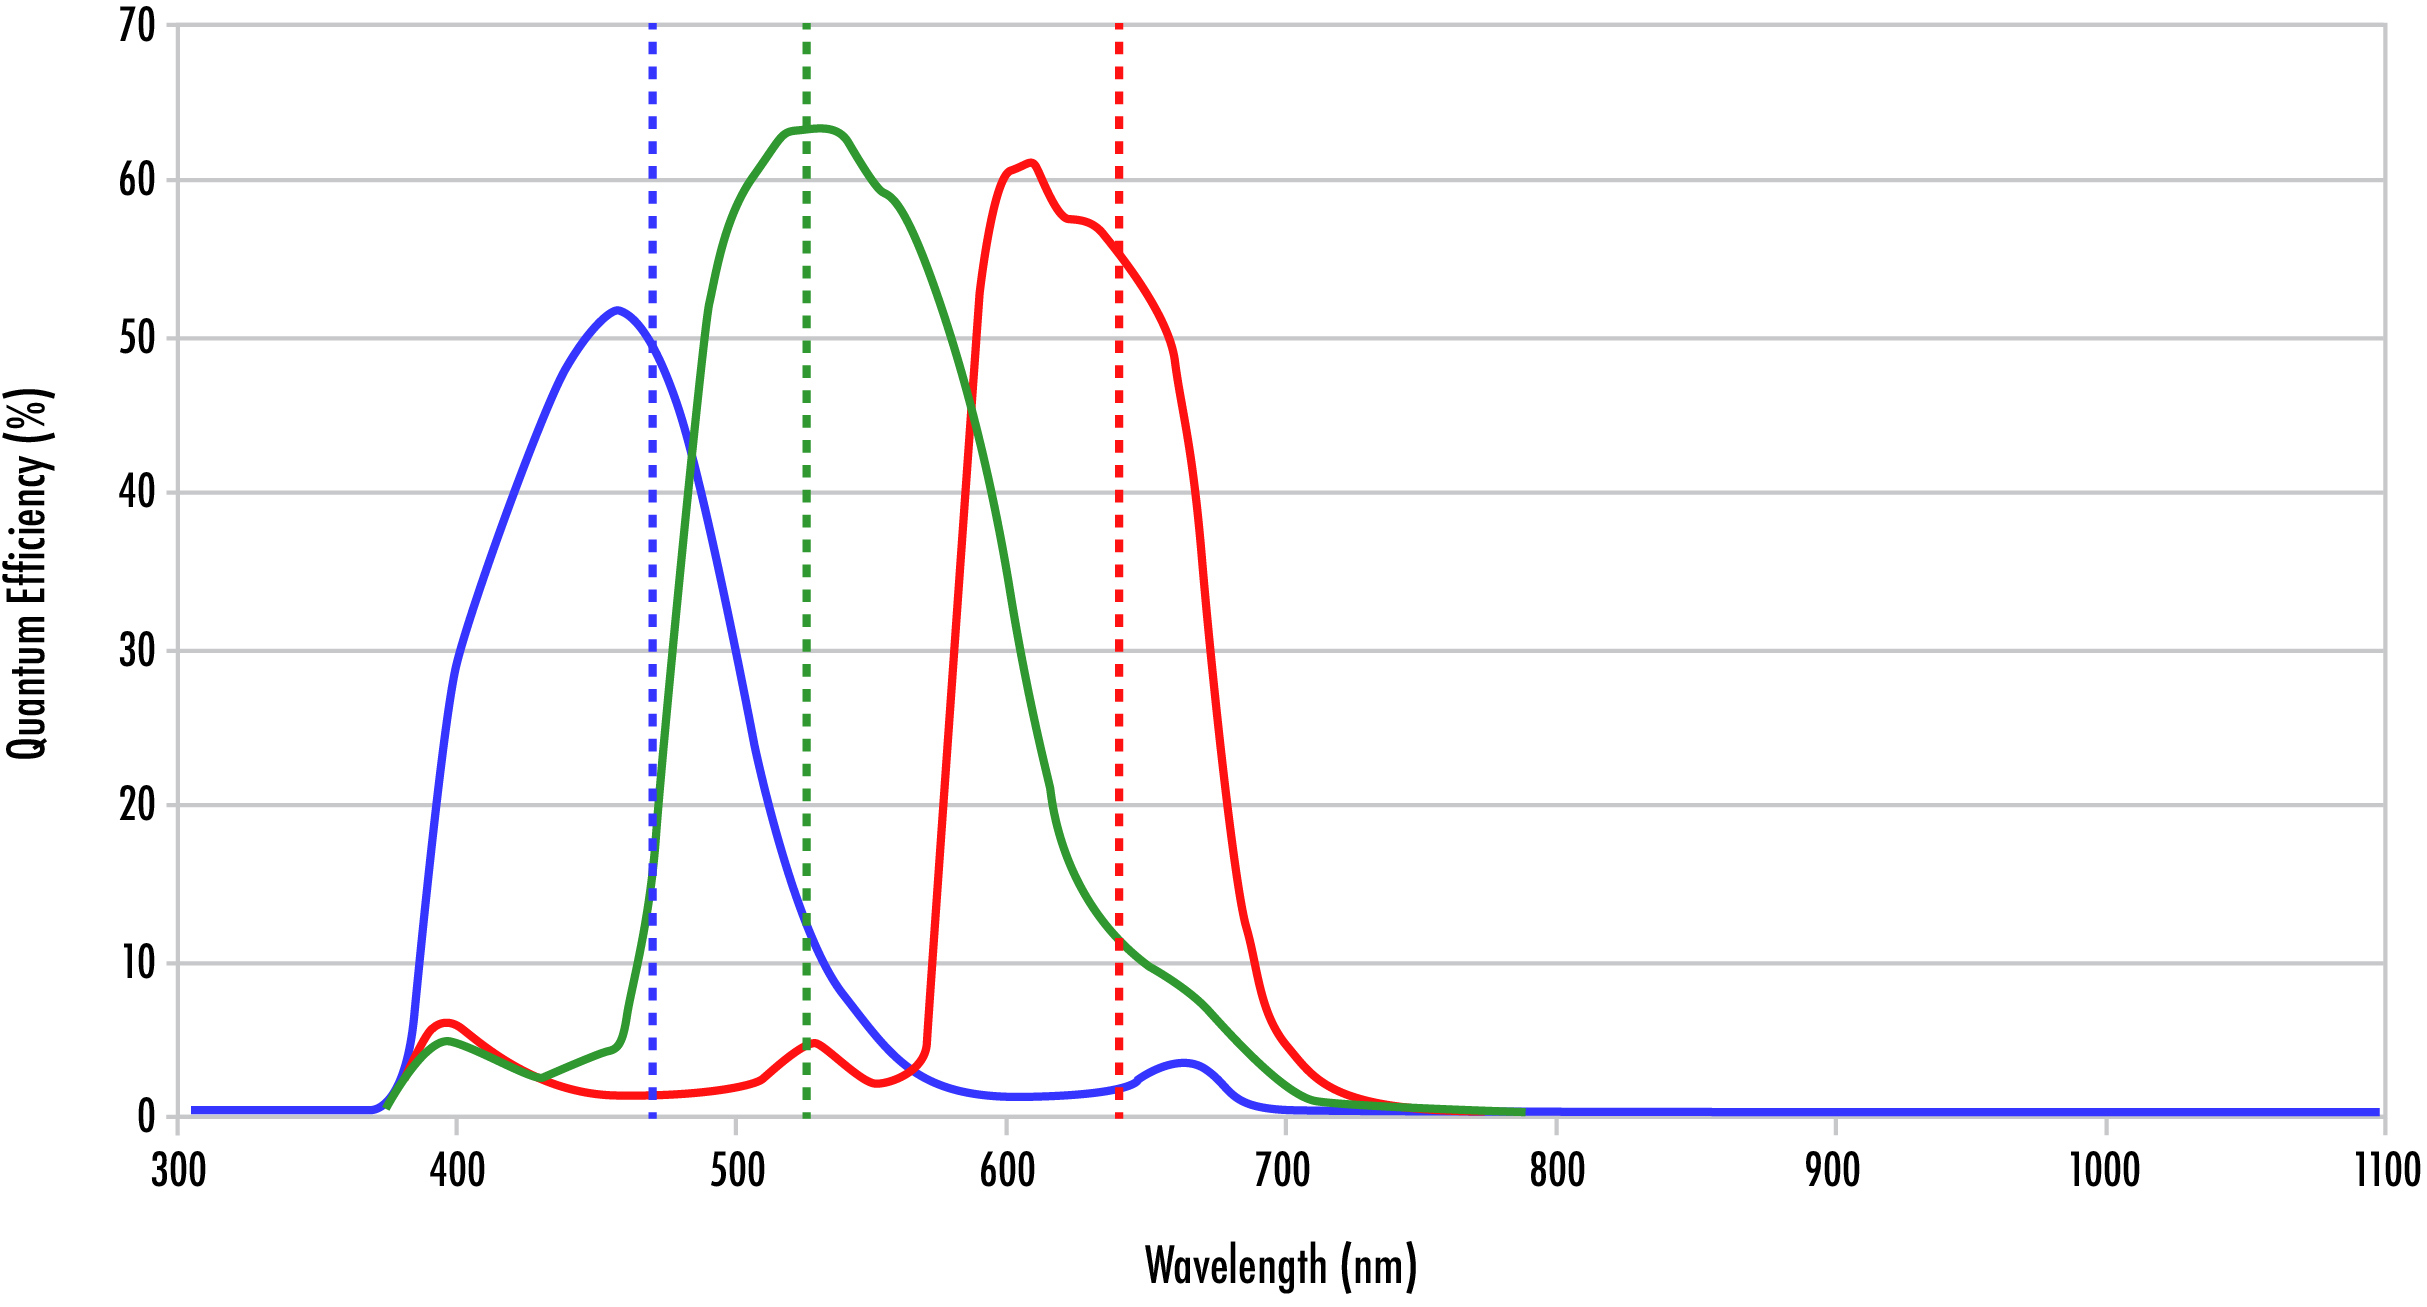 La courbe d'efficacité quantique d'une caméra RVB montrant le chevauchement entre les sensibilités rouge, verte et bleue.